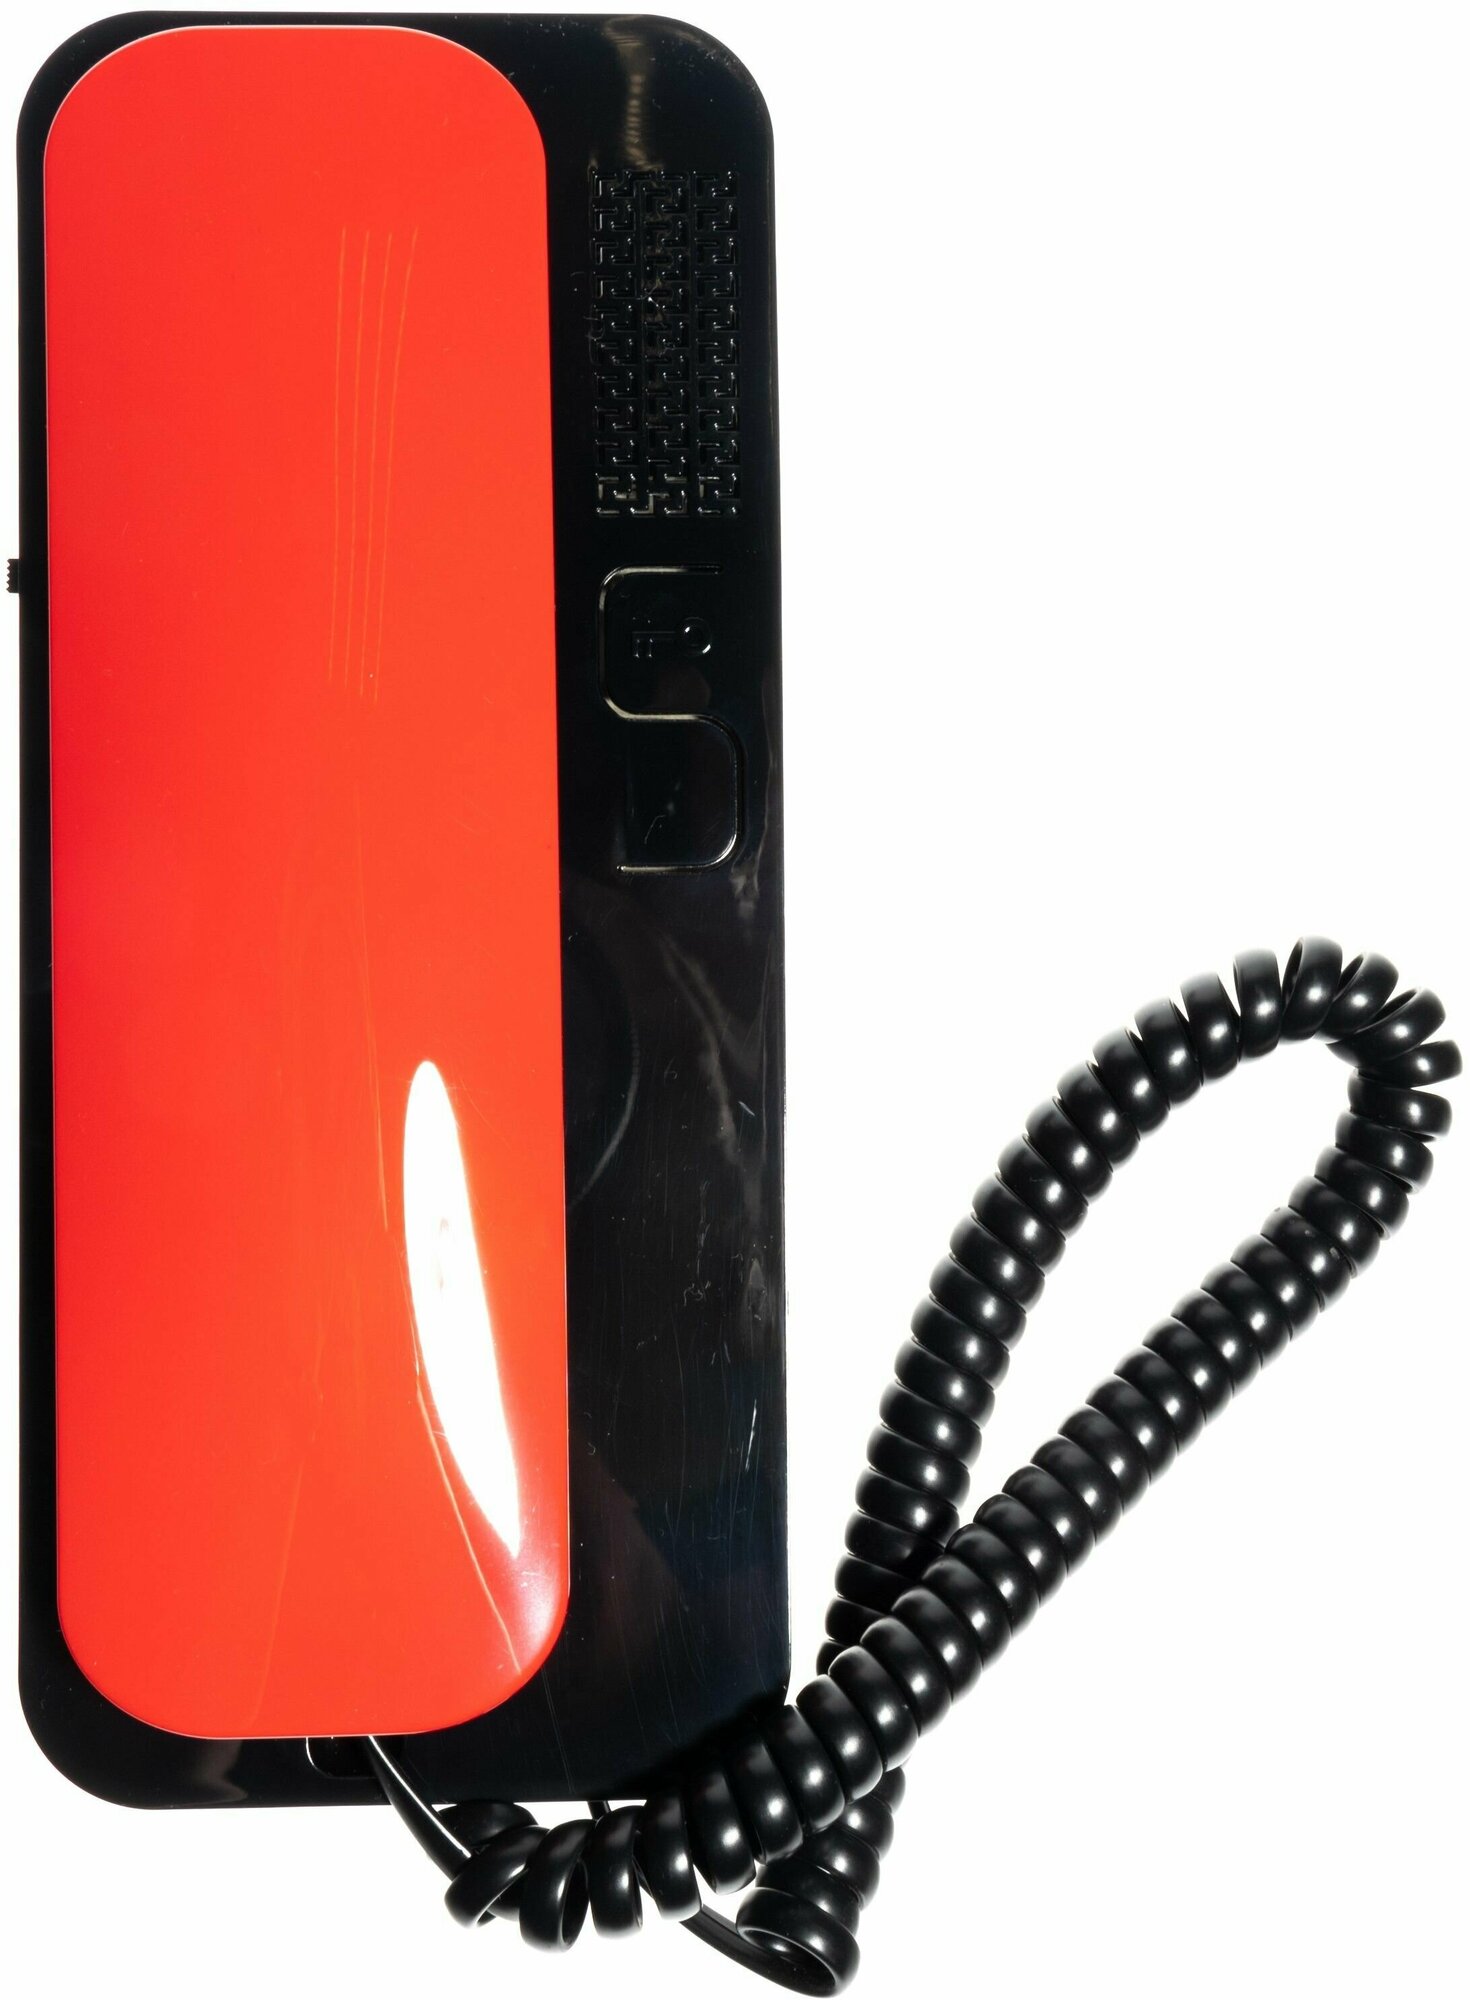 Цифрал Unifon Smart U трубка домофона Красно-Черная (для координатных домофонов CYFRAL ETLIS метаком VIZIT) черная с красной трубкой